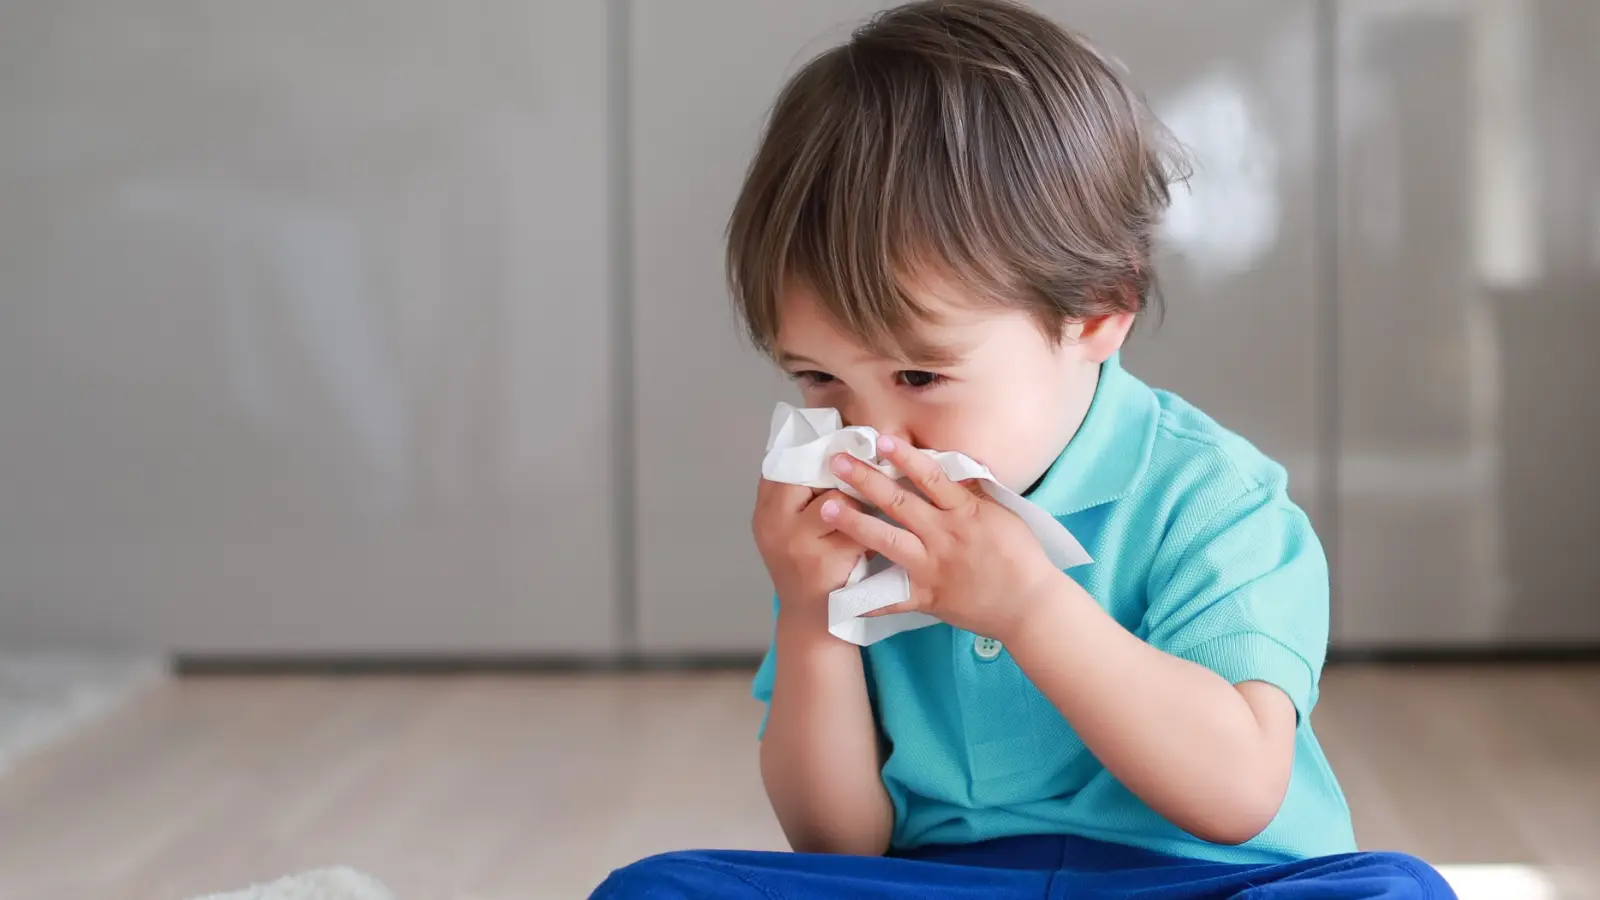 كيف يمكن الوقاية من نزلات البرد عند الاطفال؟